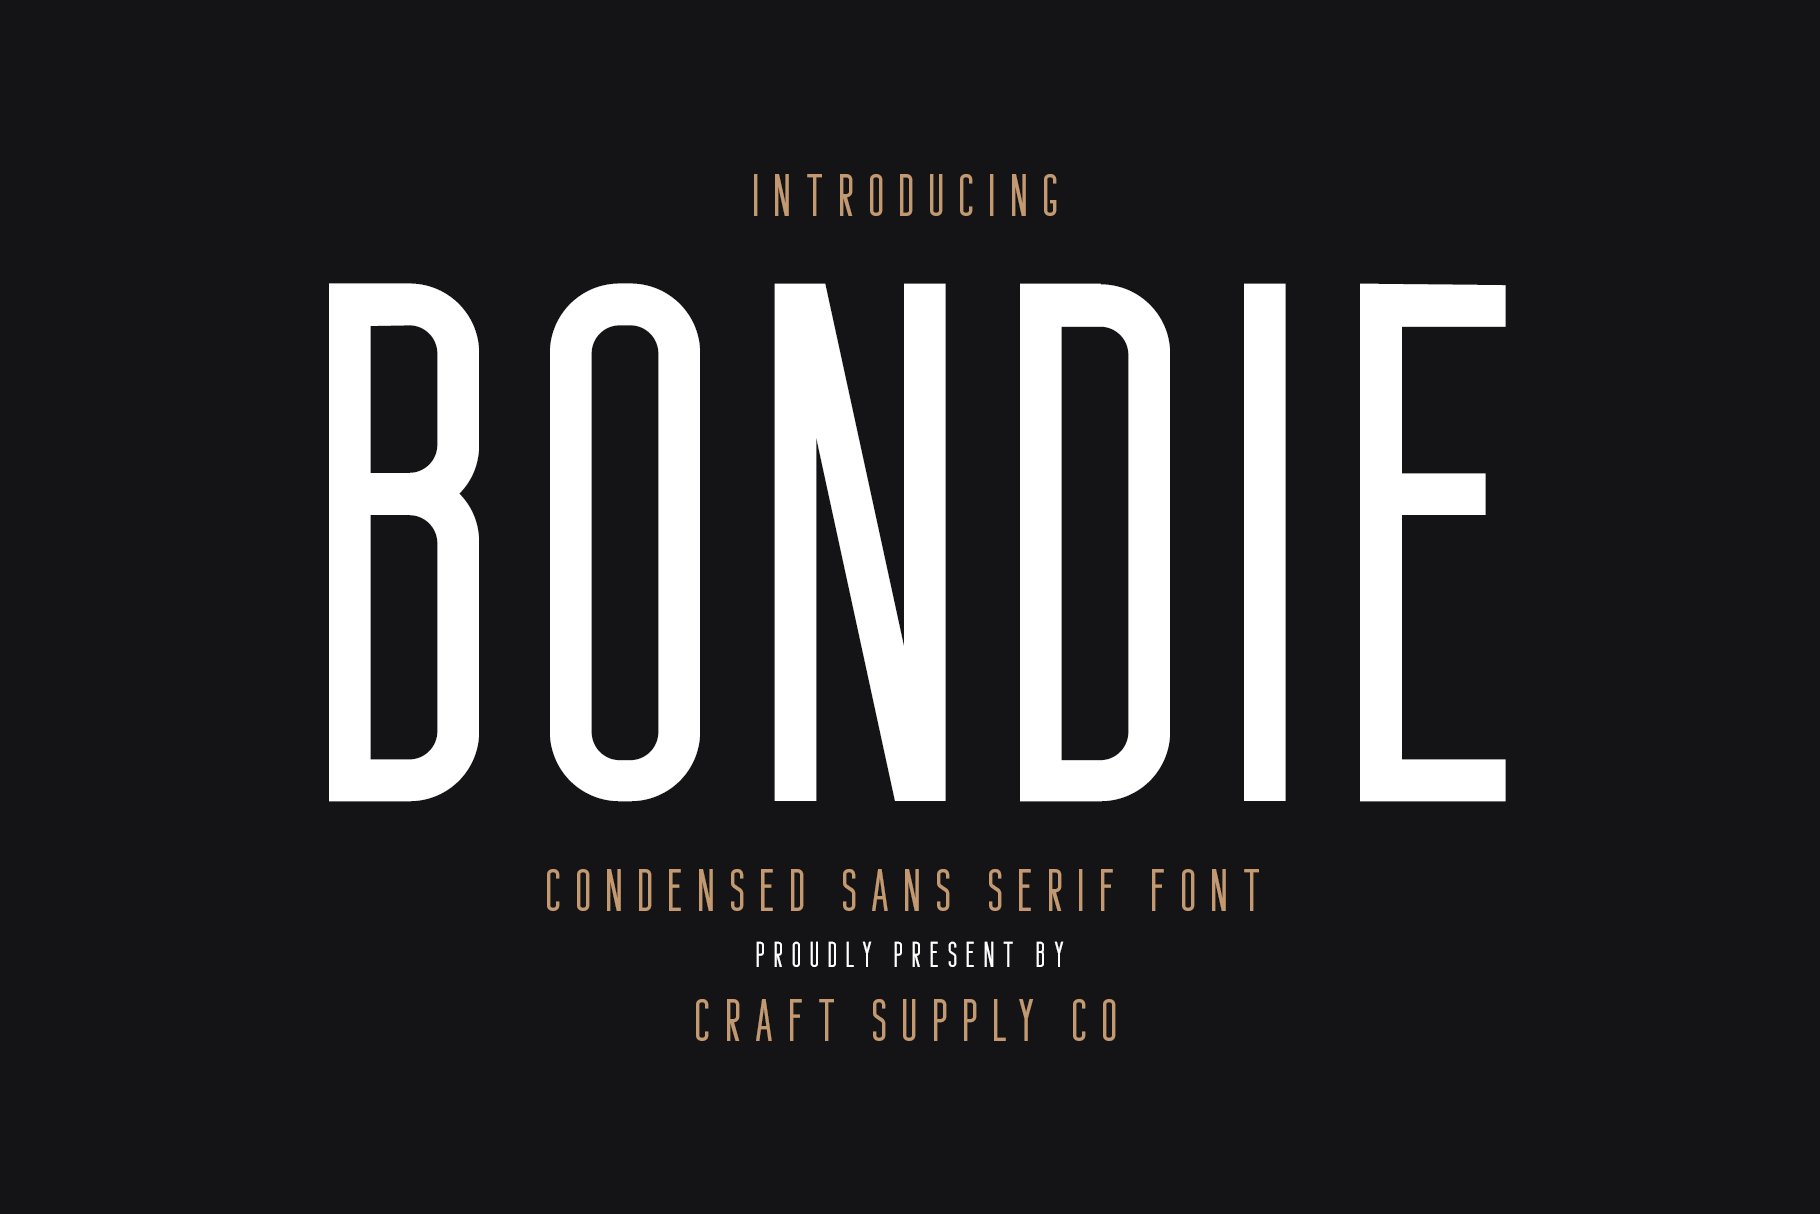 Bondie - Condensed Sans Serif cover image.